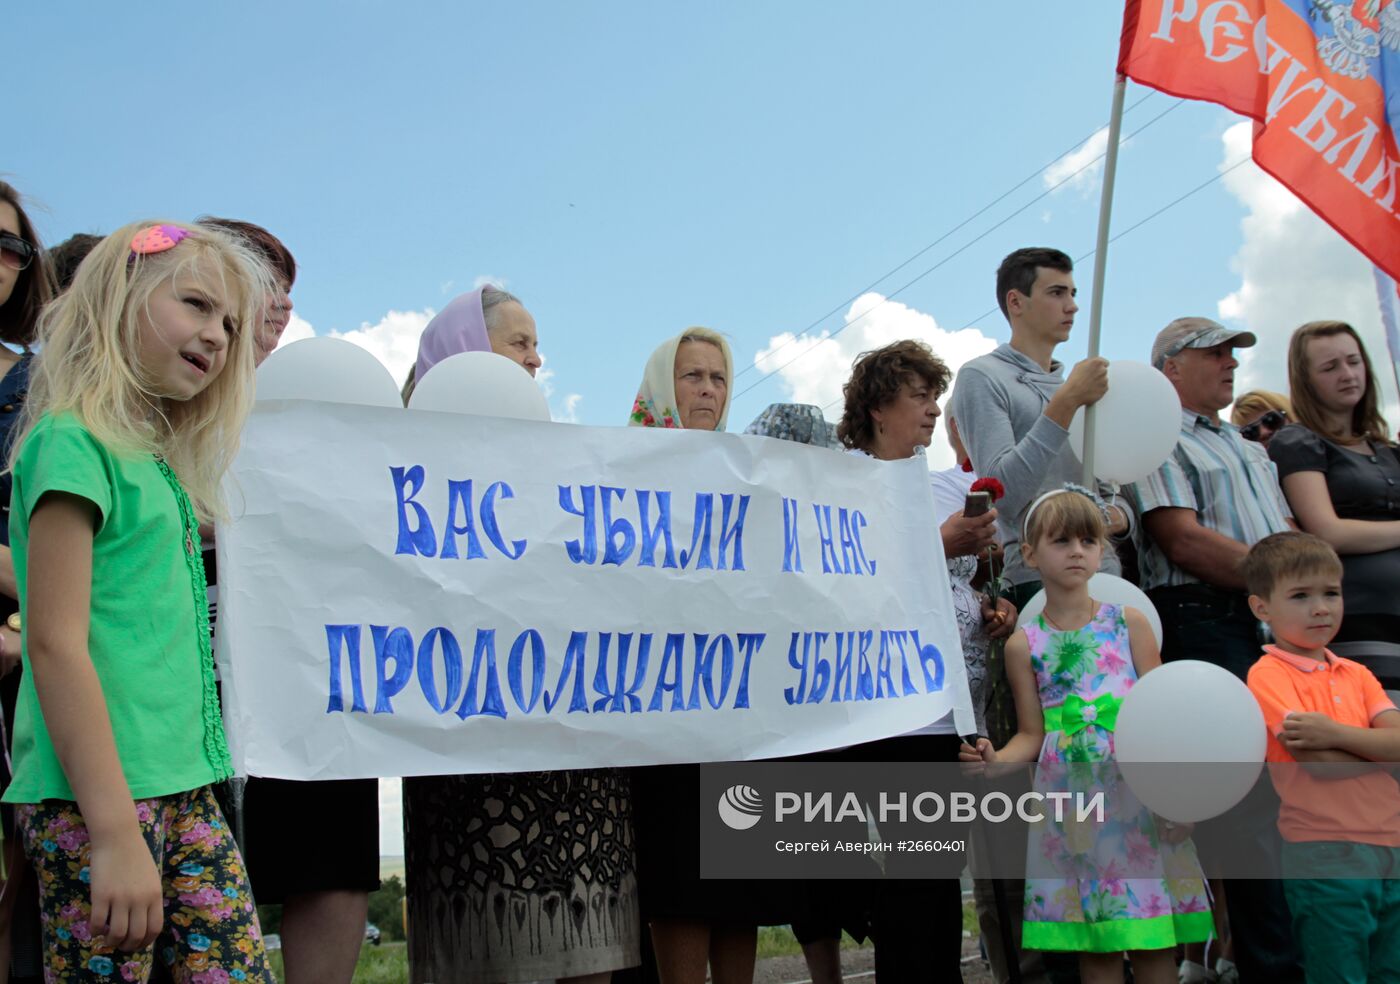 Митинг-реквием "Судьбы оборванная нить", посвященный годовщине падения "Боинга" в Донецкой области